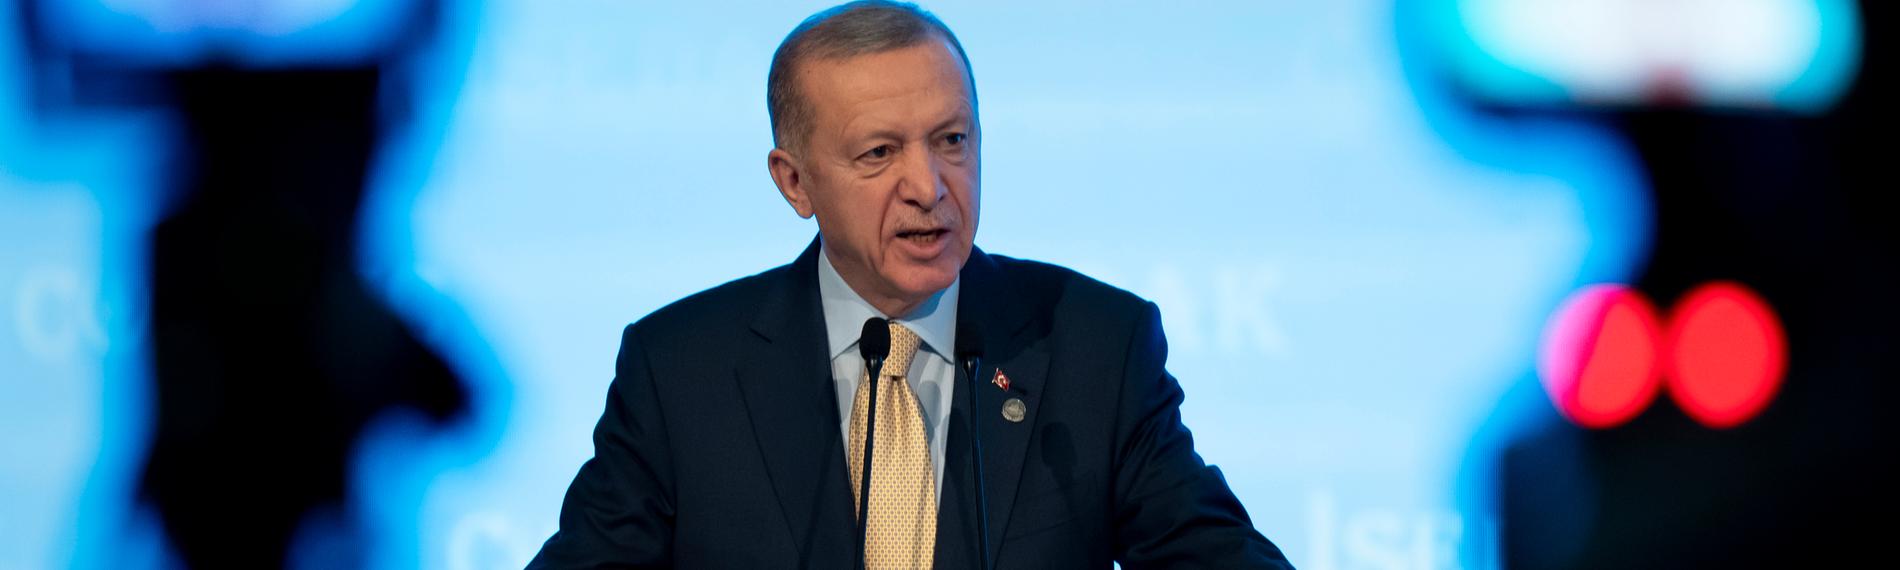 Der türkische Präsident Recep Tayyip Erdogan hält eine Rede in Istanbul, Türkei.